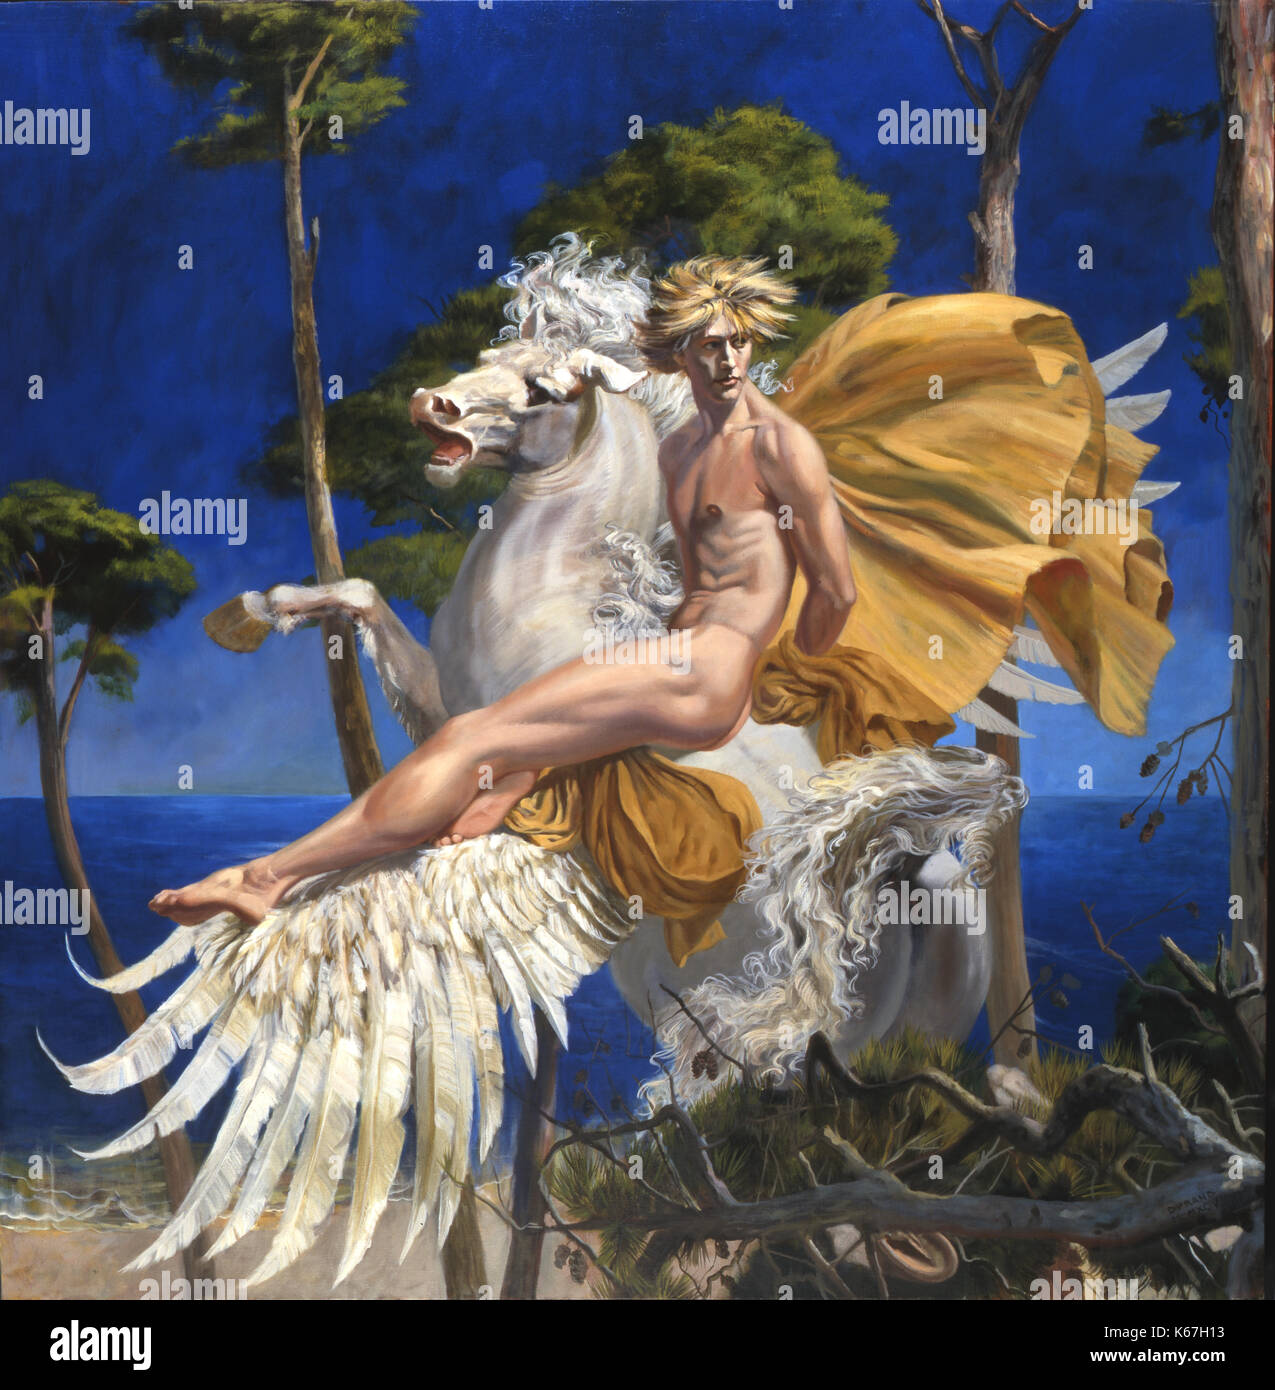 Pegasus-The weiß, geflügelte göttliche Hengst der griechischen Mythologie ist etwa in einem Hain von Pinien am Rande des Meeres. Pegasus "Rider ist eine schöne, blonde Jugend, eine geheimnisvolle griechischen Helden Bellerophon oder Perseus. Die große Malerei ist eine posthume Porträt des Royal Ballet Dancer, Julian Hosking. Stockfoto